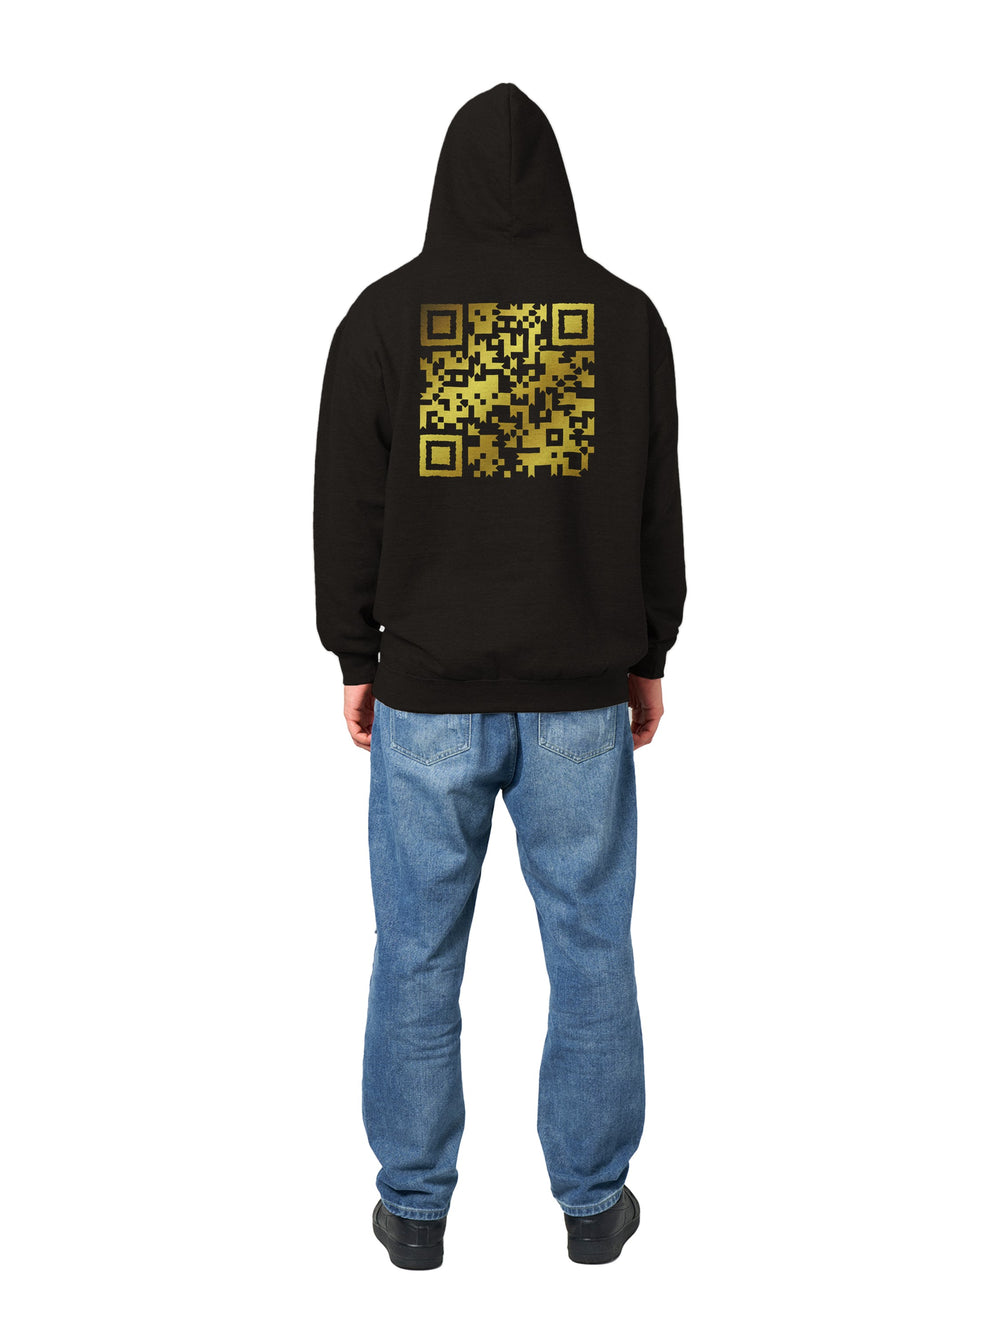 Golden Horizon Hoodie - Entdecken Sie unseren personalisierbaren Hoodie mit QR-Code: Ihr ultimativer Hoodie! Gestalten Sie Ihren eigenen QR-Code-Hoodie, um Ihre digitale Welt mit Stil zu verbinden. Perfekt für jede Gelegenheit – erhalten Sie Ihren personalisierten Hoodie direkt nachhause